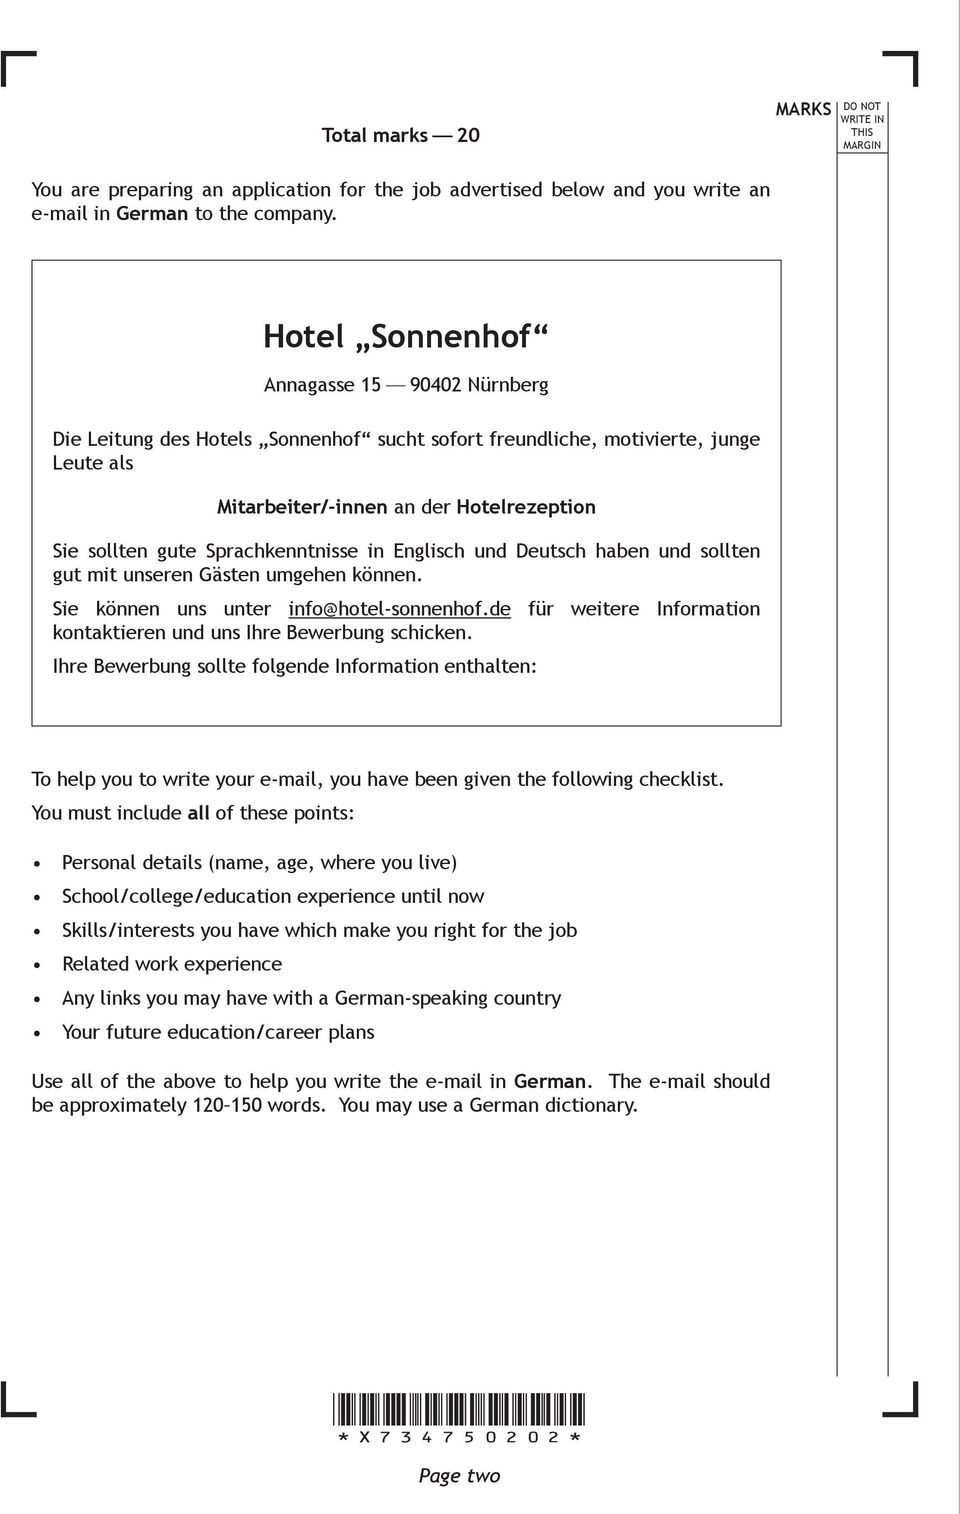 Sprachkenntnisse in Englisch und Deutsch haben und sollten gut mit unseren Gästen umgehen können. Sie können uns unter info@hotel-sonnenhof.